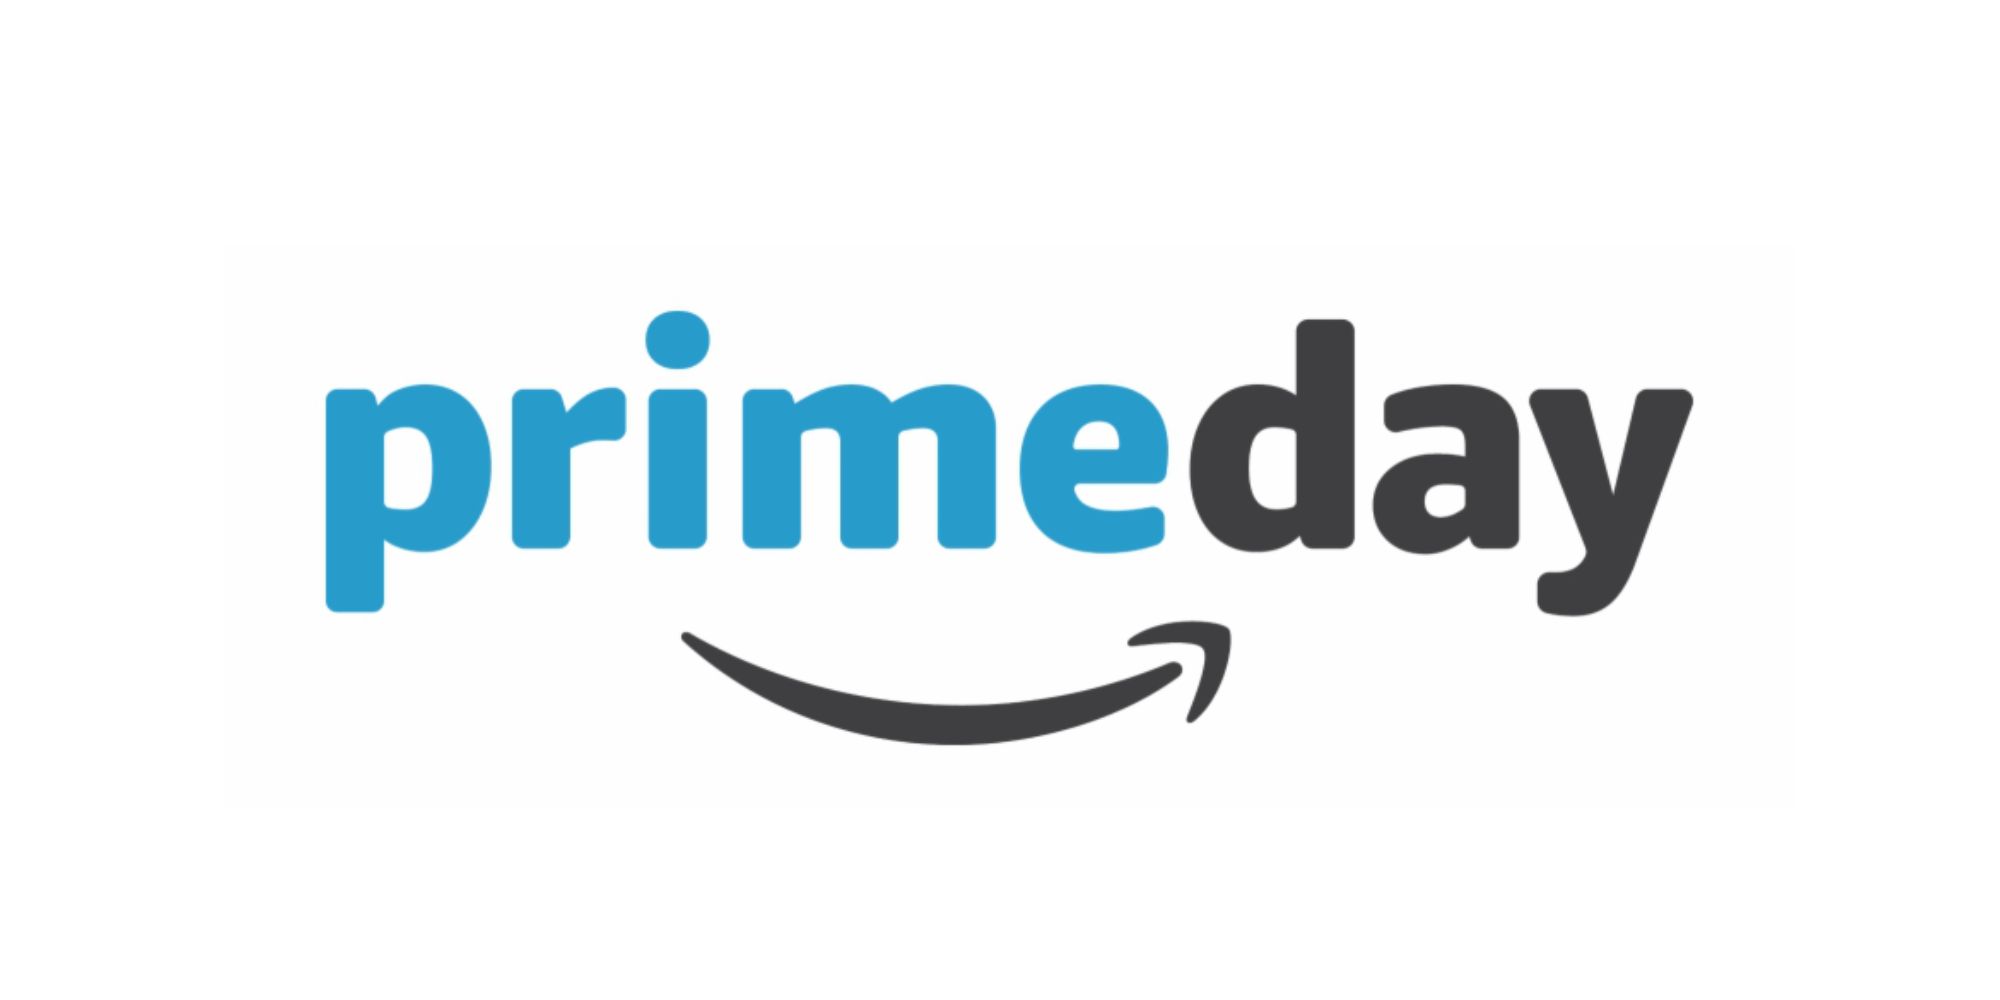 Amazon Prime Day logo on a white background